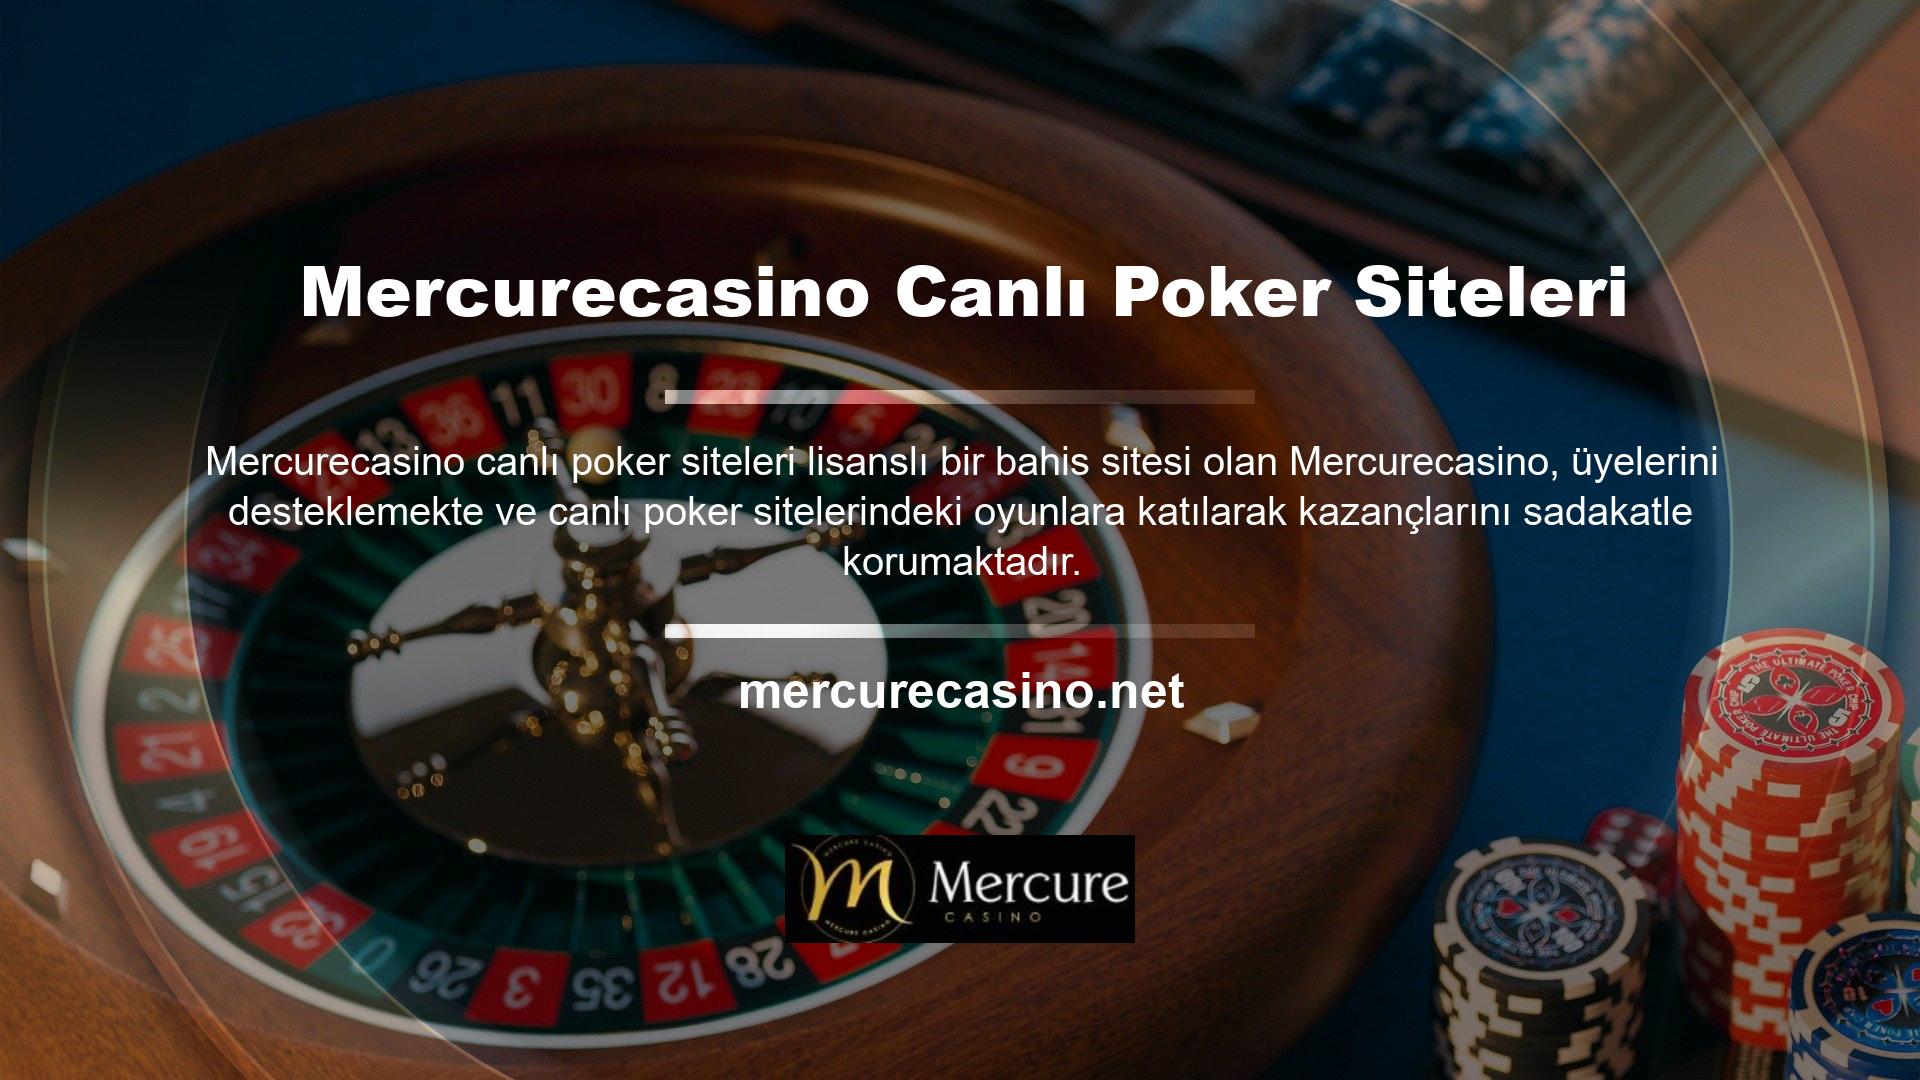 Bu bahis sitesi, Türkiye'nin en gelişmiş altyapı olanaklarını kullanarak blackjack ve Texas Hold'em seçeneklerini yüksek oranlarla birleştiren poker oyunları sunmaktadır